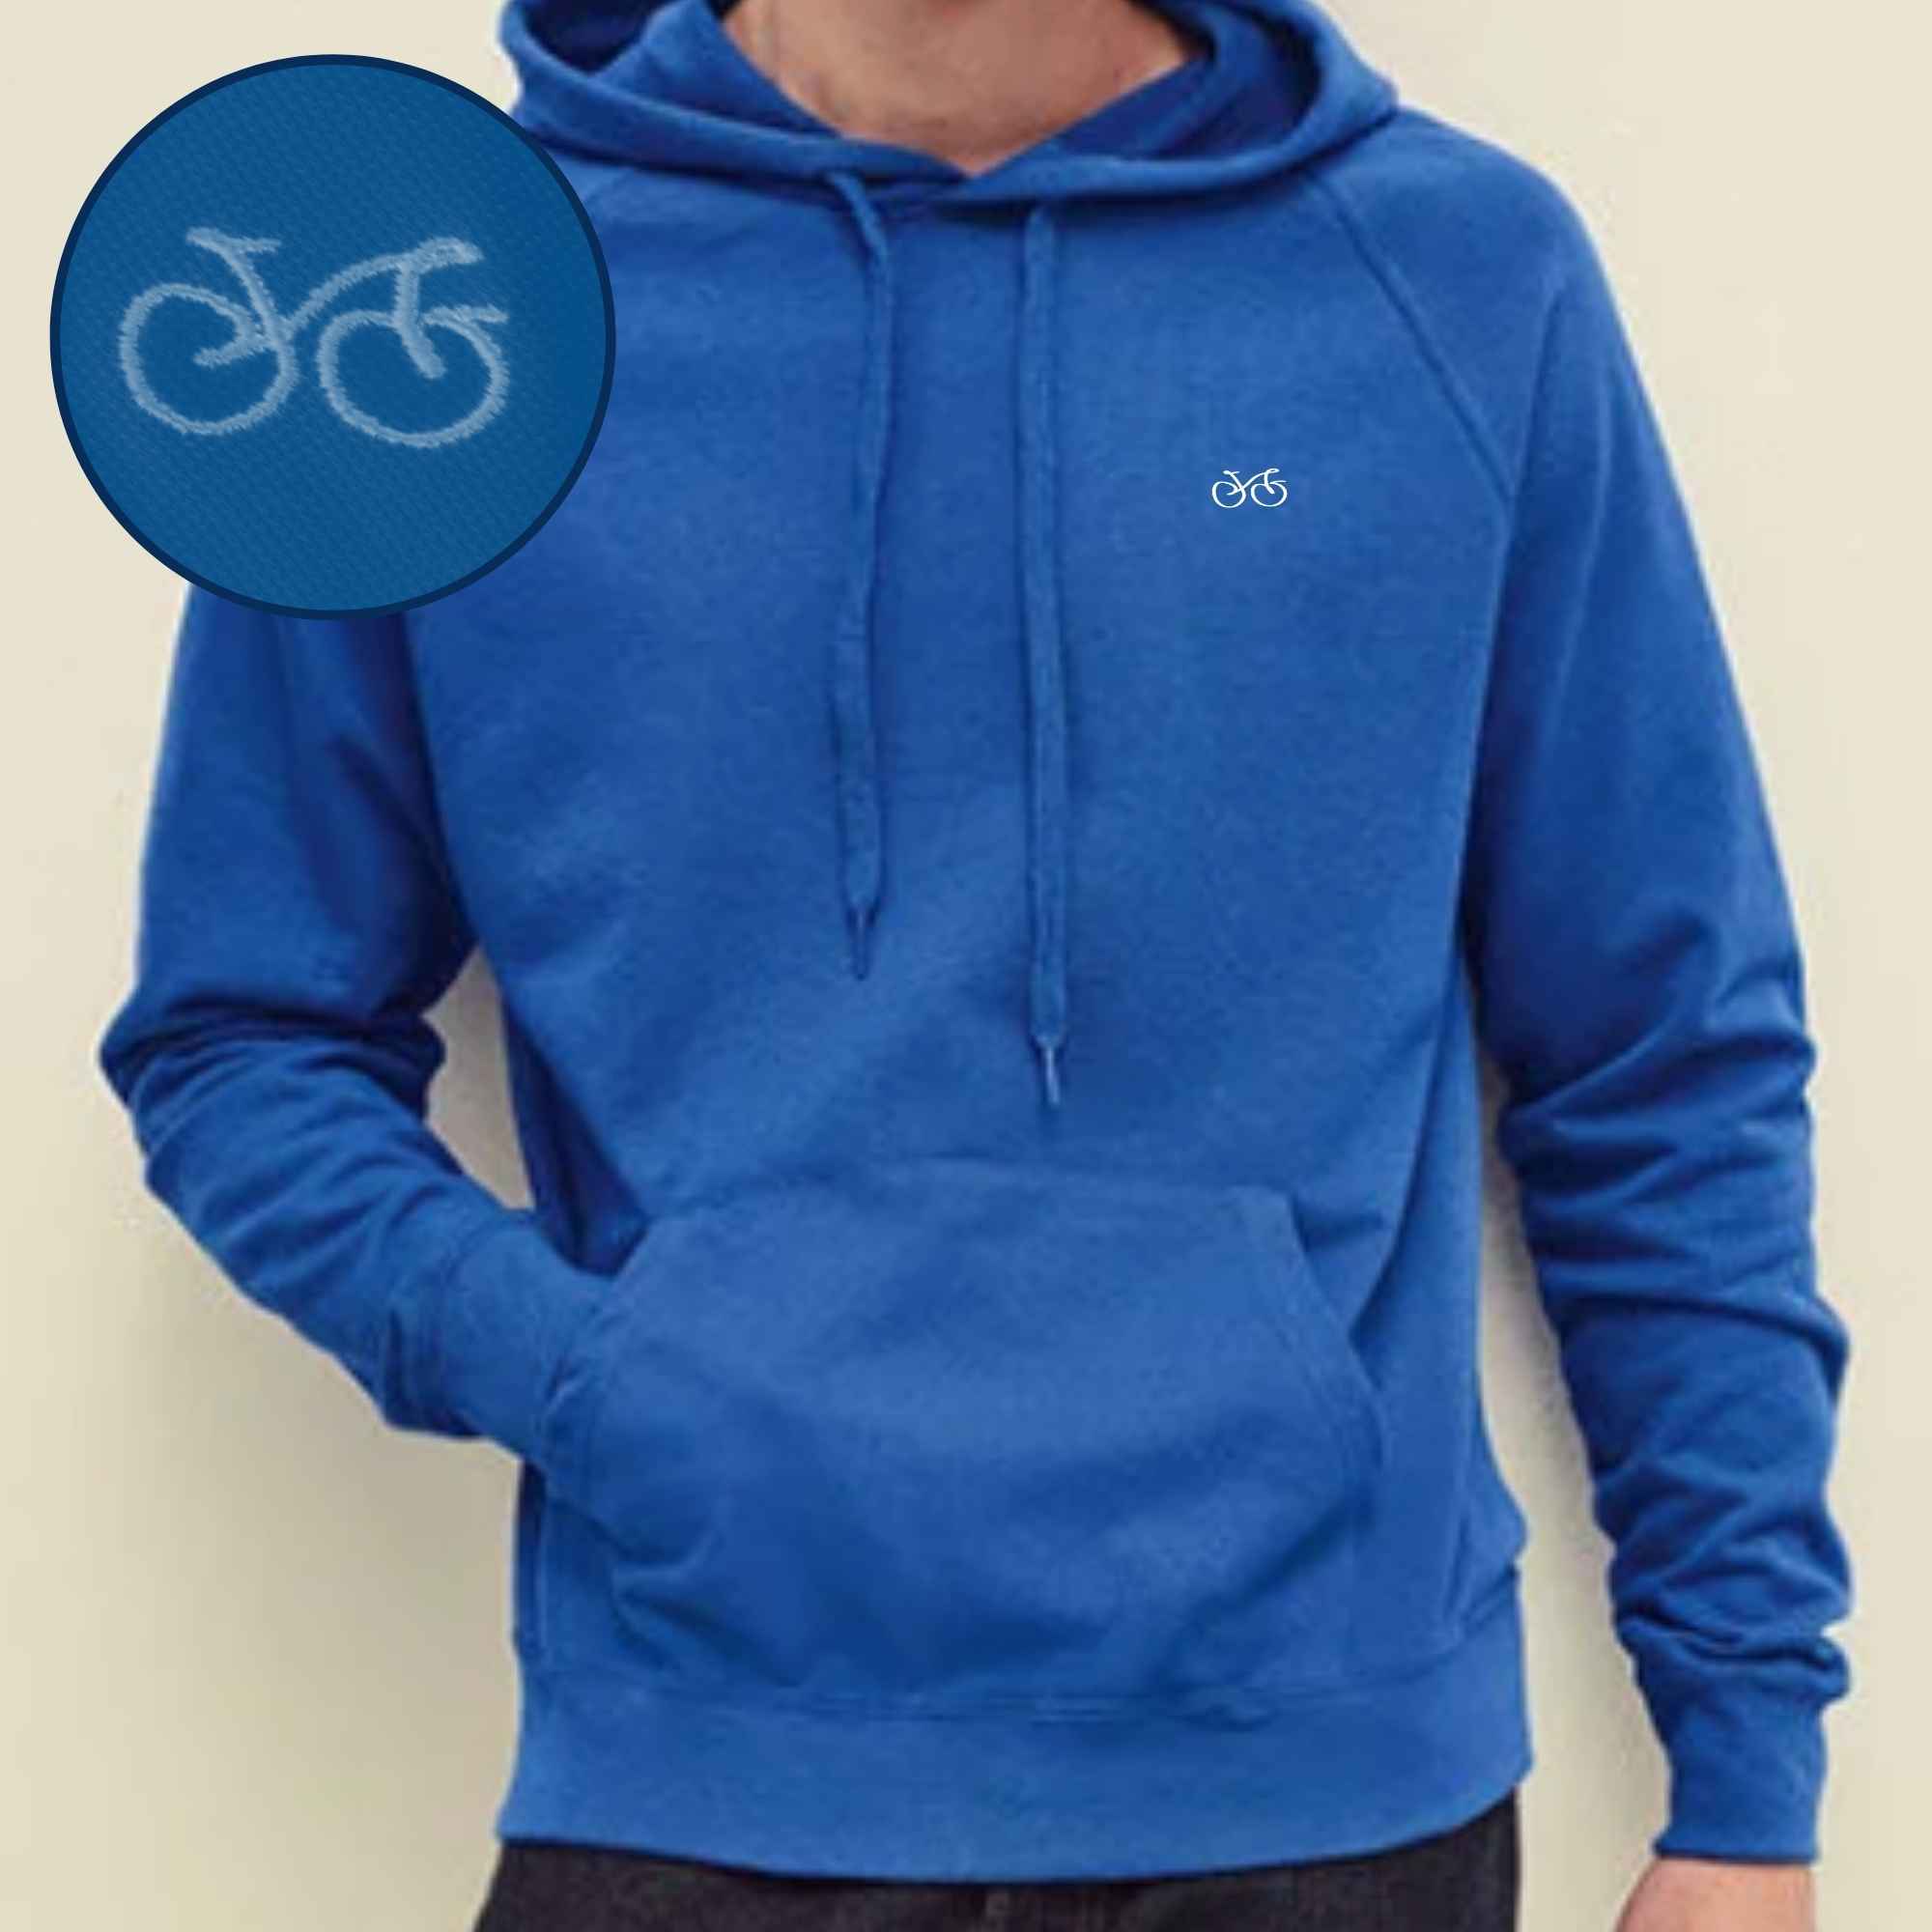 Bestickter Hoodie mit Fahrrad-Motiv auf der Brust in der Farbe Hellblau